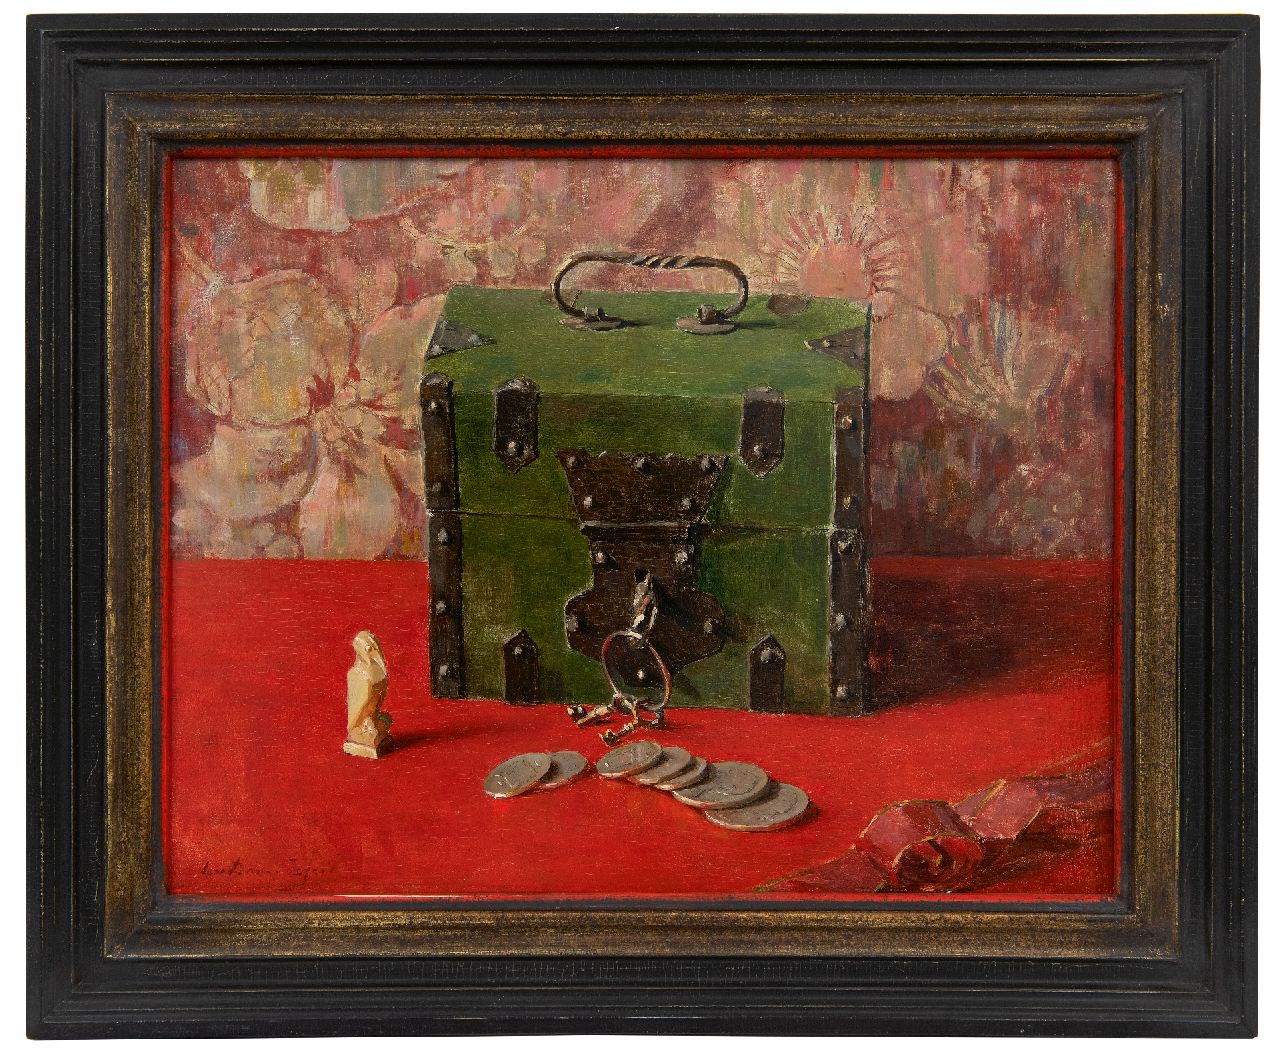 Dam van Isselt L. van | Lucie van Dam van Isselt | Schilderijen te koop aangeboden | Stilleven met groene geldkist, olieverf op paneel 31,1 x 39,5 cm, gesigneerd linksonder